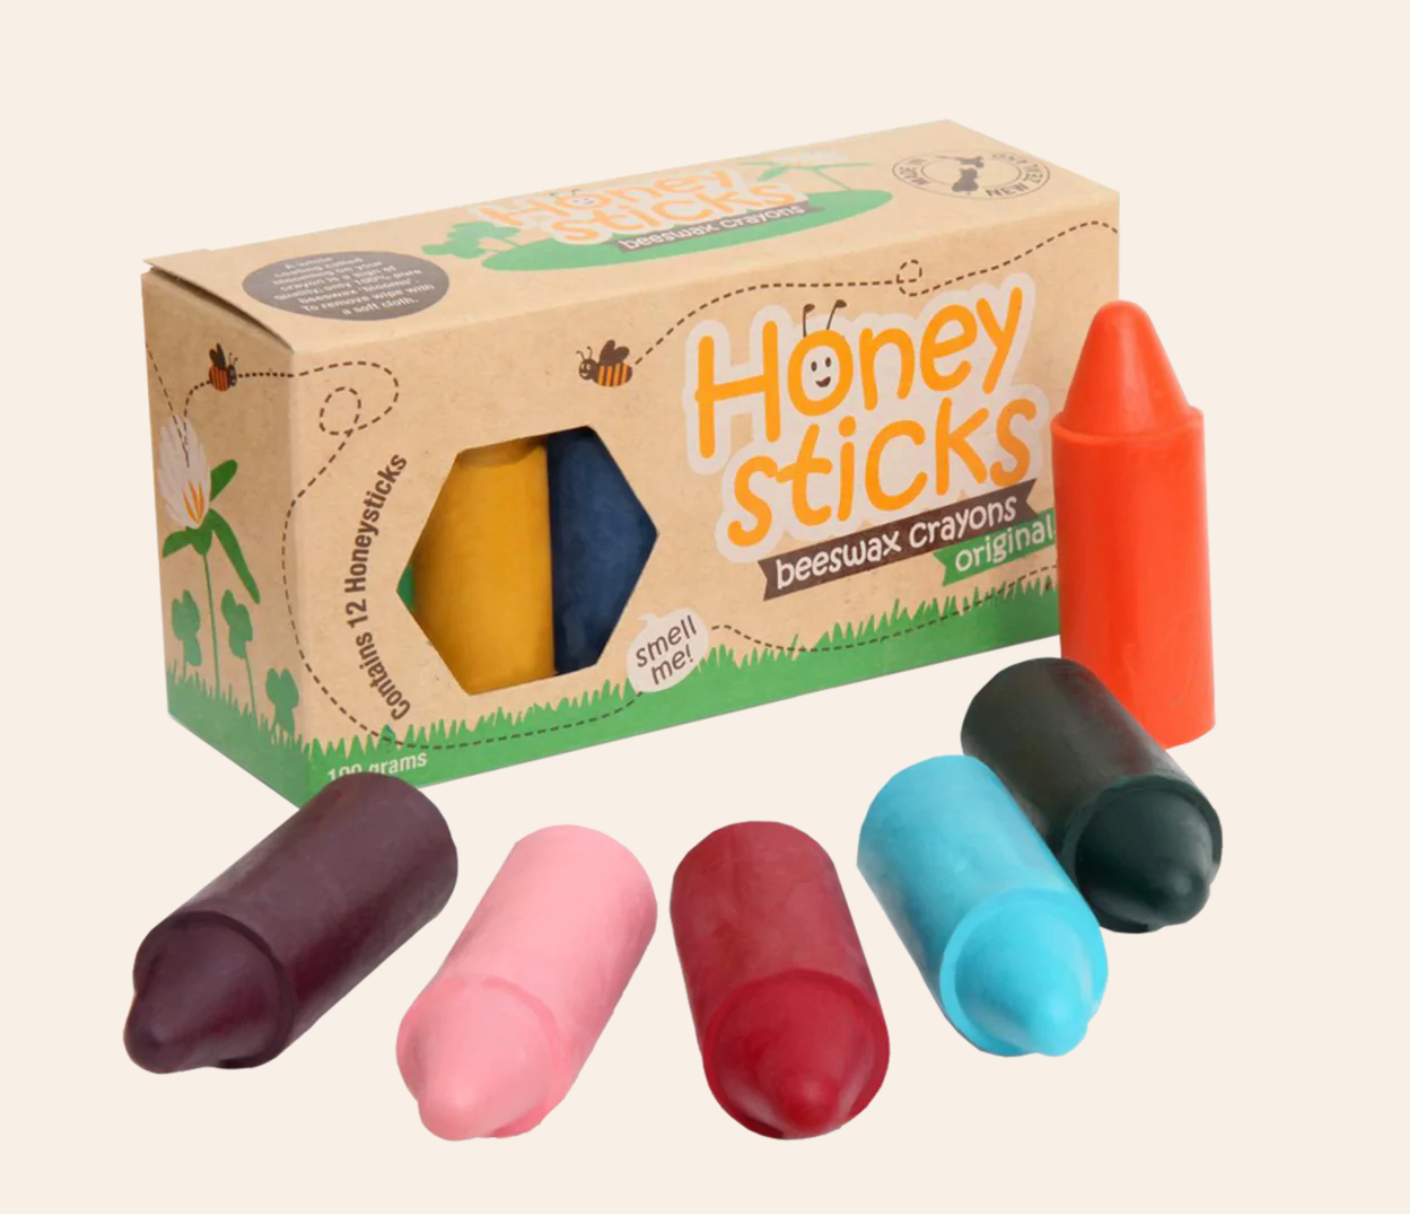 Honeysticks Beeswax Original Crayons